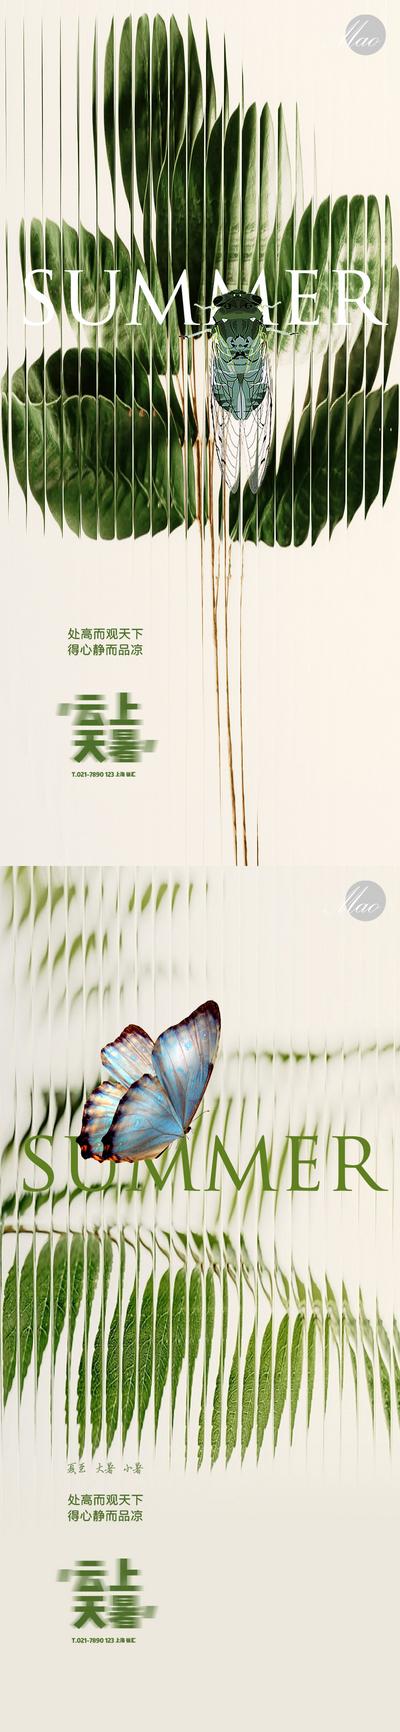 南门网 广告 海报 节气 大暑 小暑 系列 磨砂